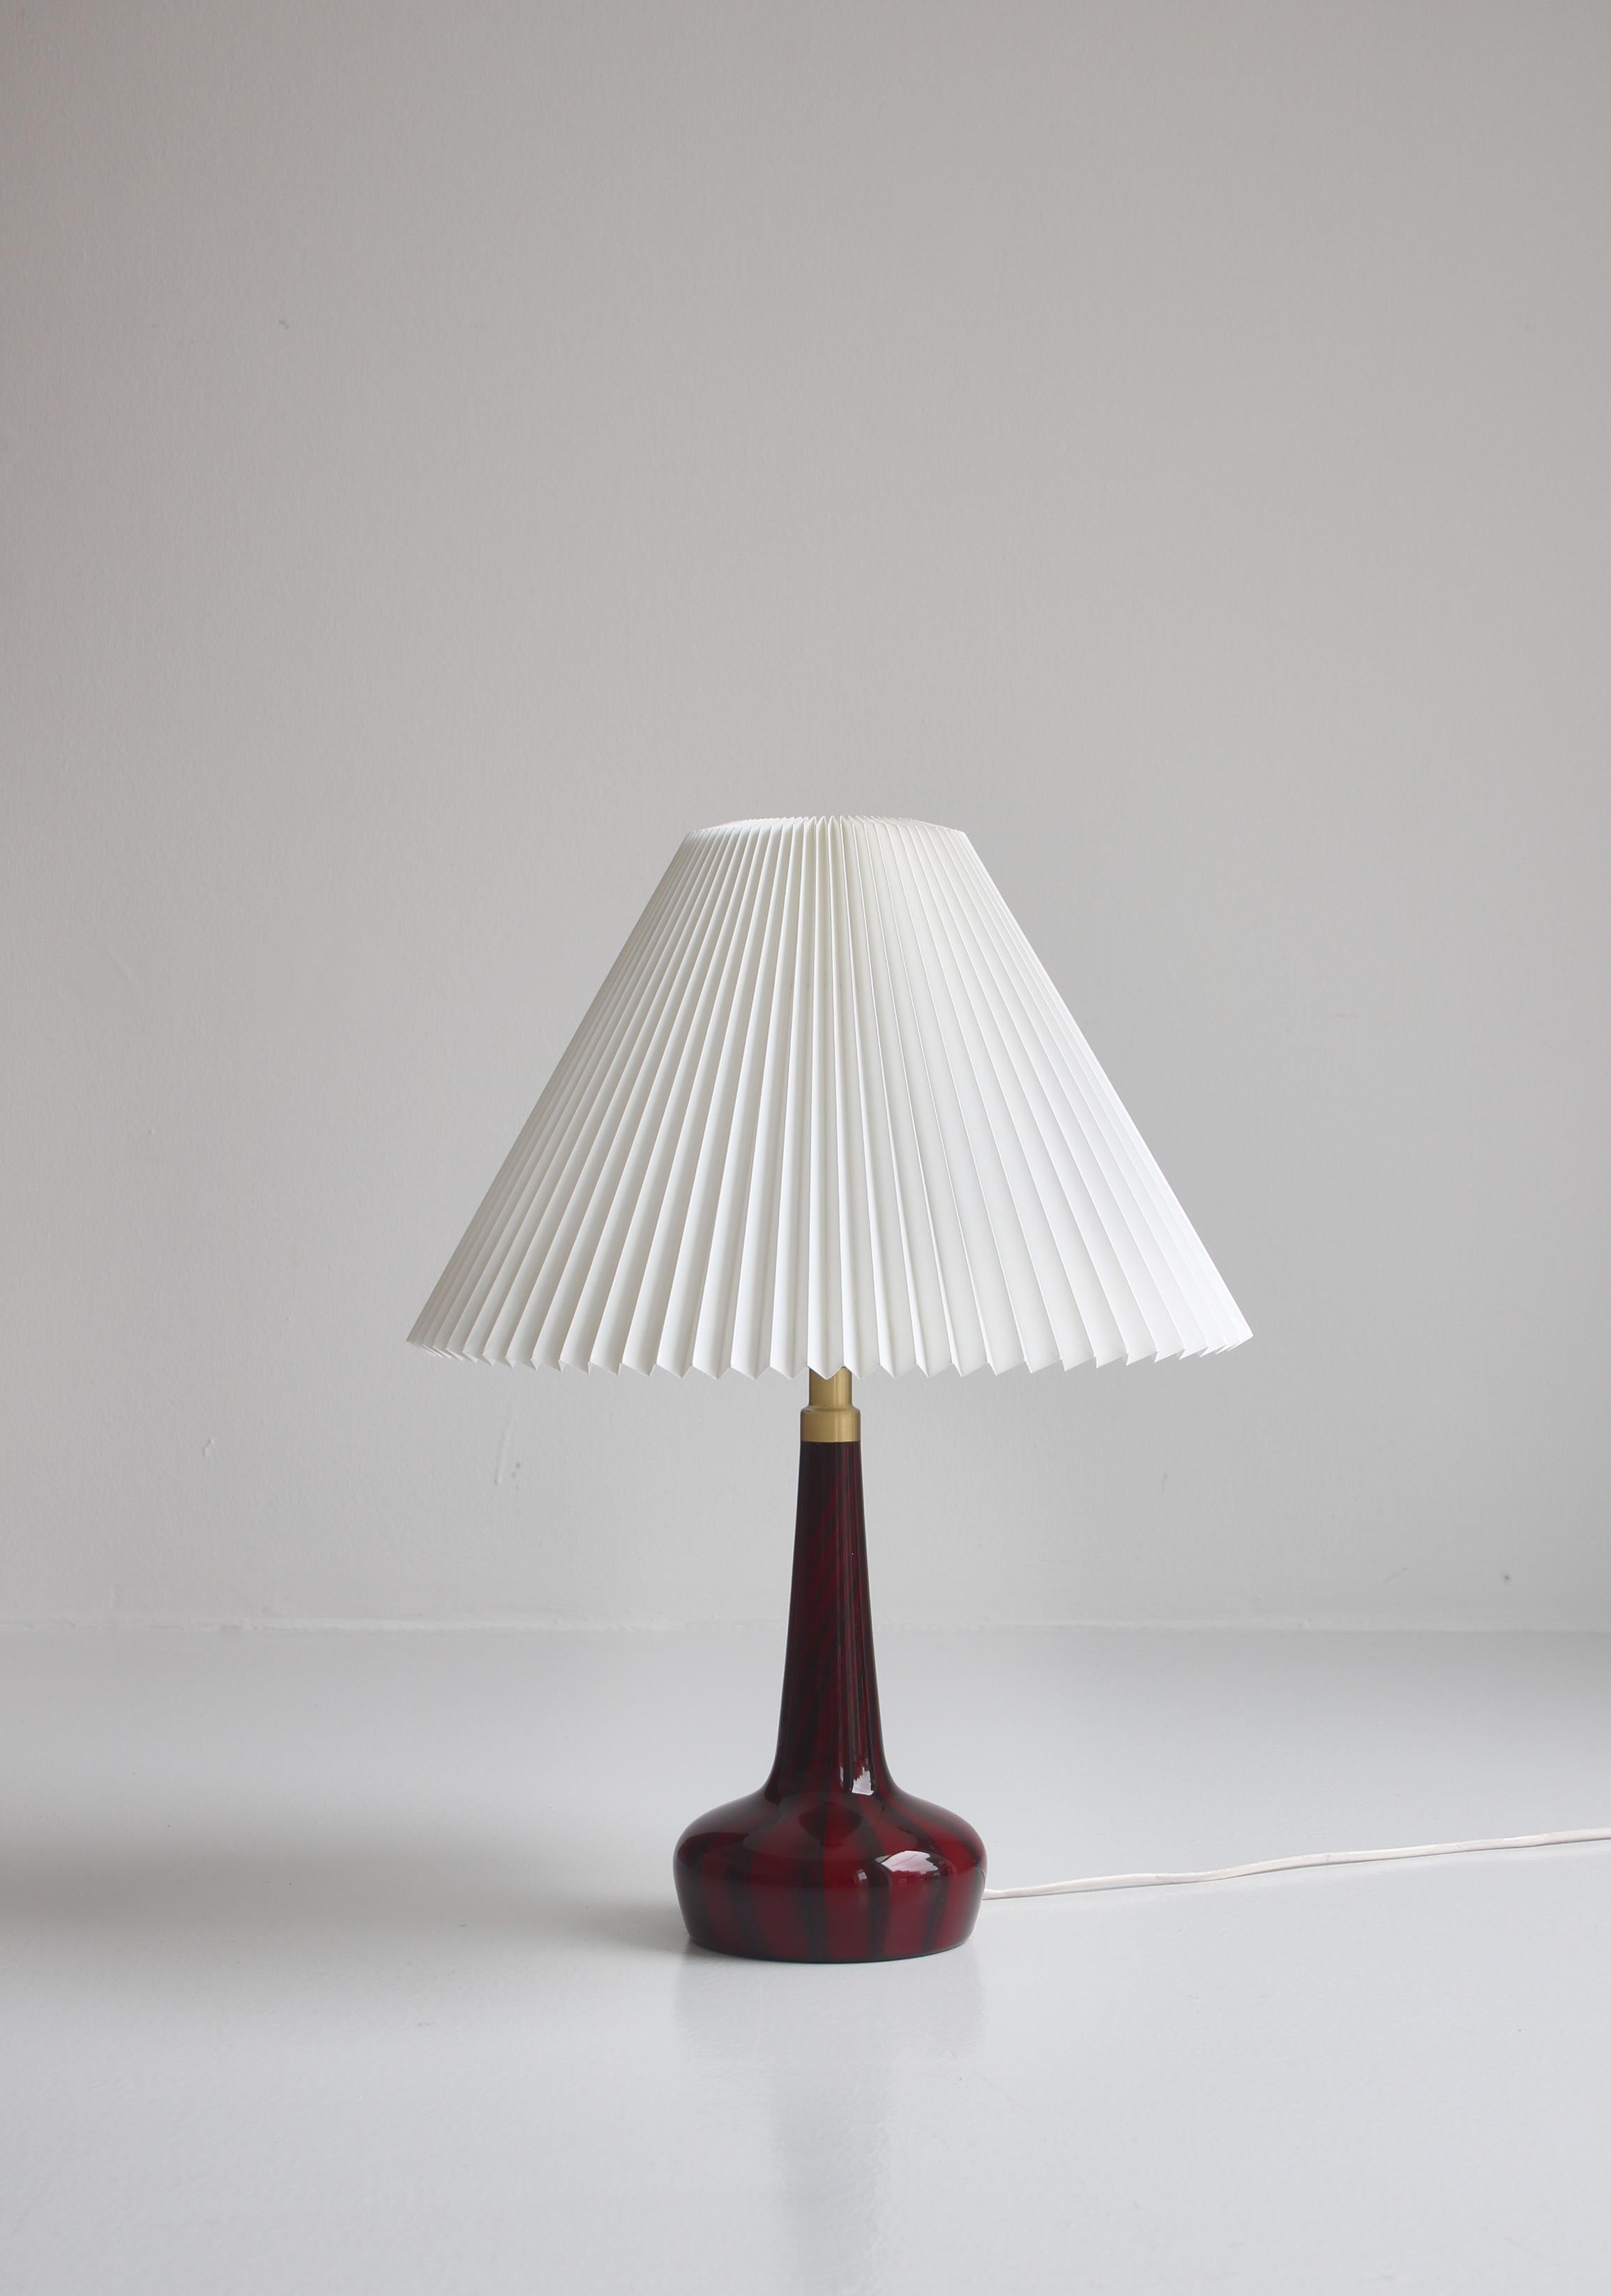 Danish Le Klint & Holmegaard Blown Glass Table Lamp Denmark by Esben Klint, 1970s For Sale